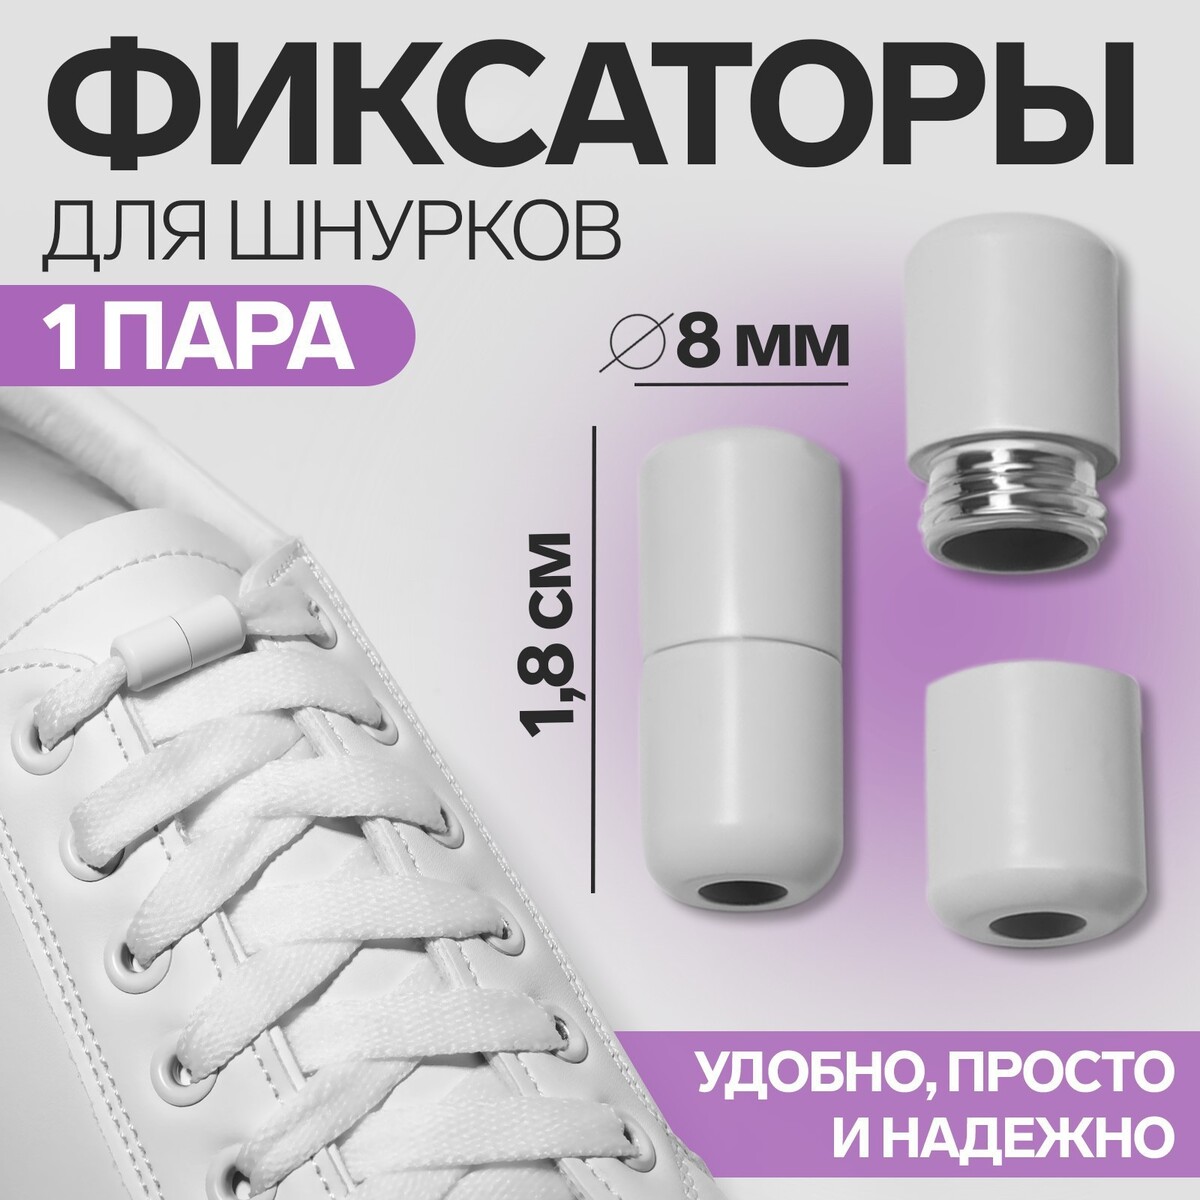 фото Фиксатор для шнурков, пара, d = 8 мм, 1,8 см, цвет белый onlitop